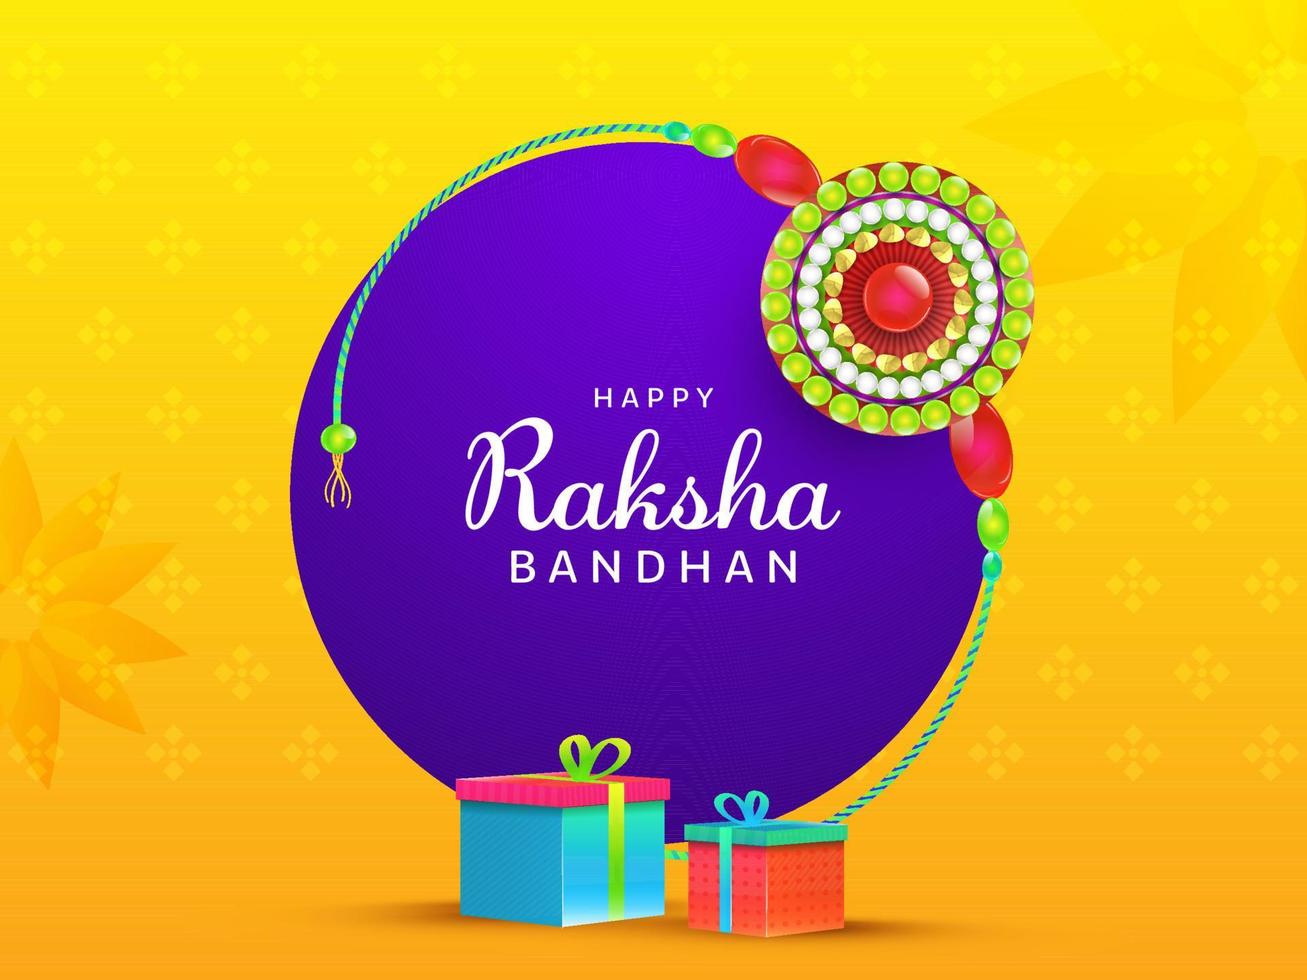 Lycklig Raksha bandhan font med runda pärla rakhi och gåva lådor på gul och lila bakgrund. vektor